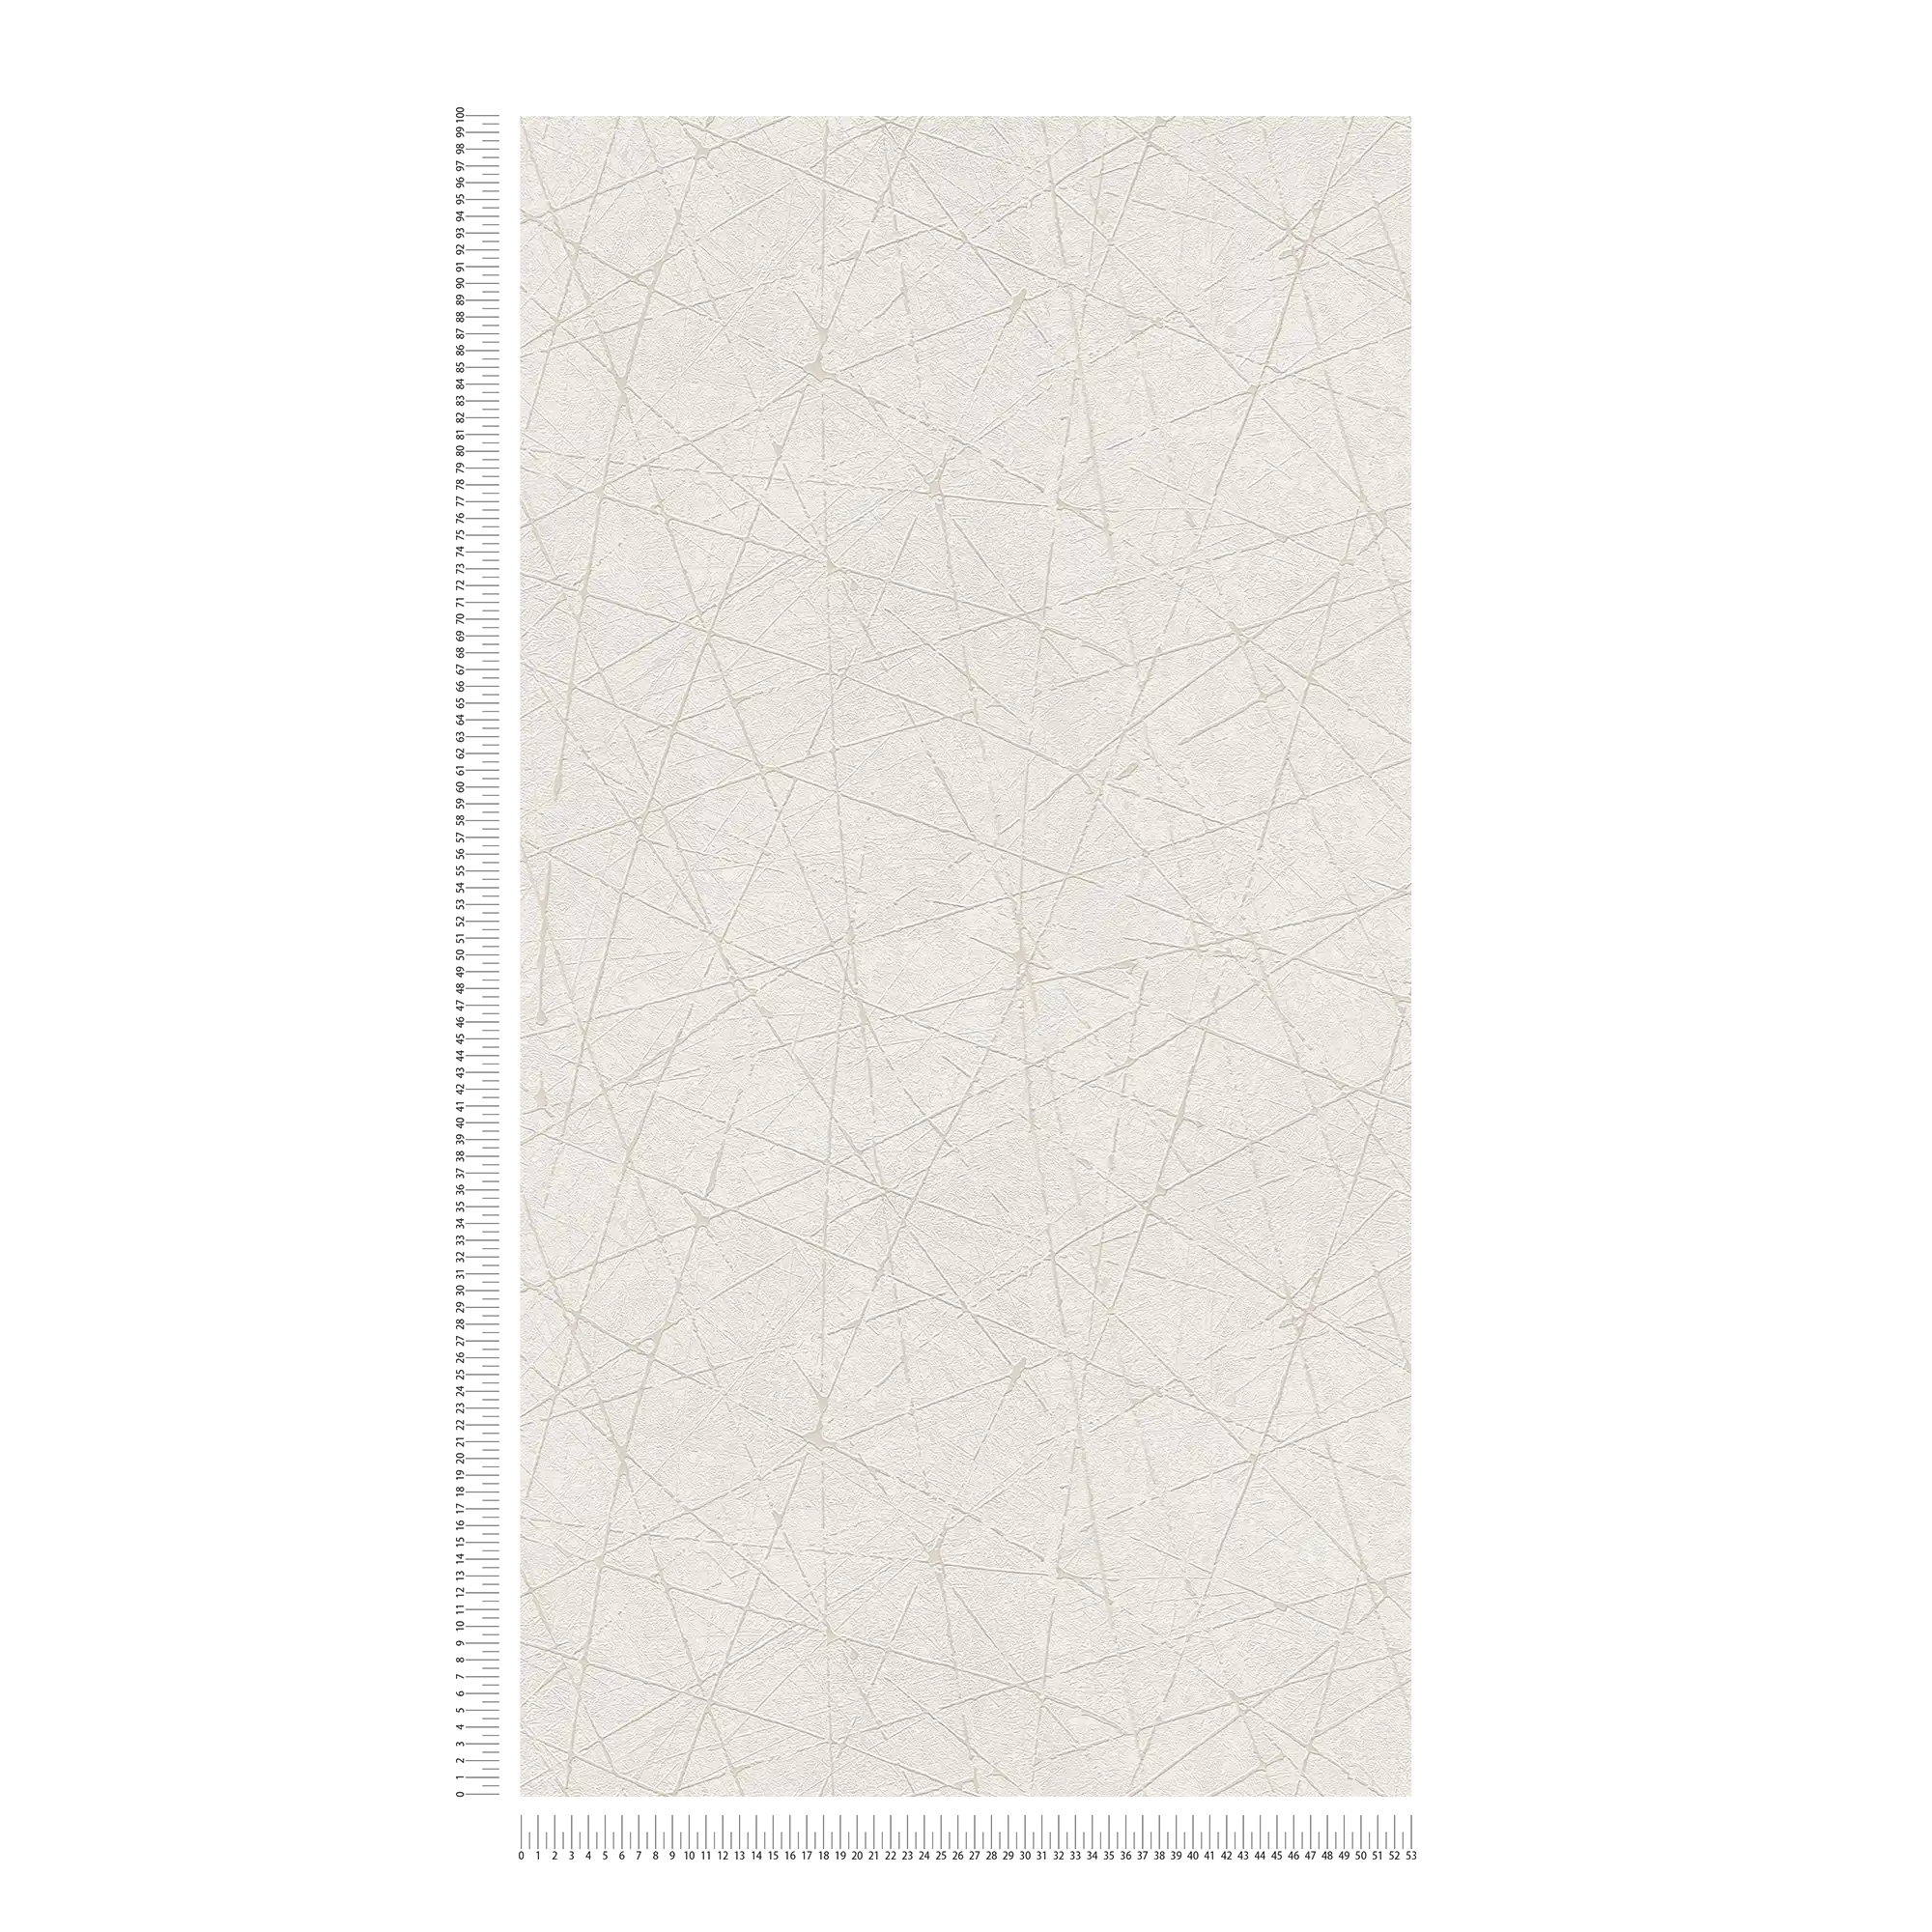             Vliesbehang met grafisch lijnenspel - wit, crème, zilver
        